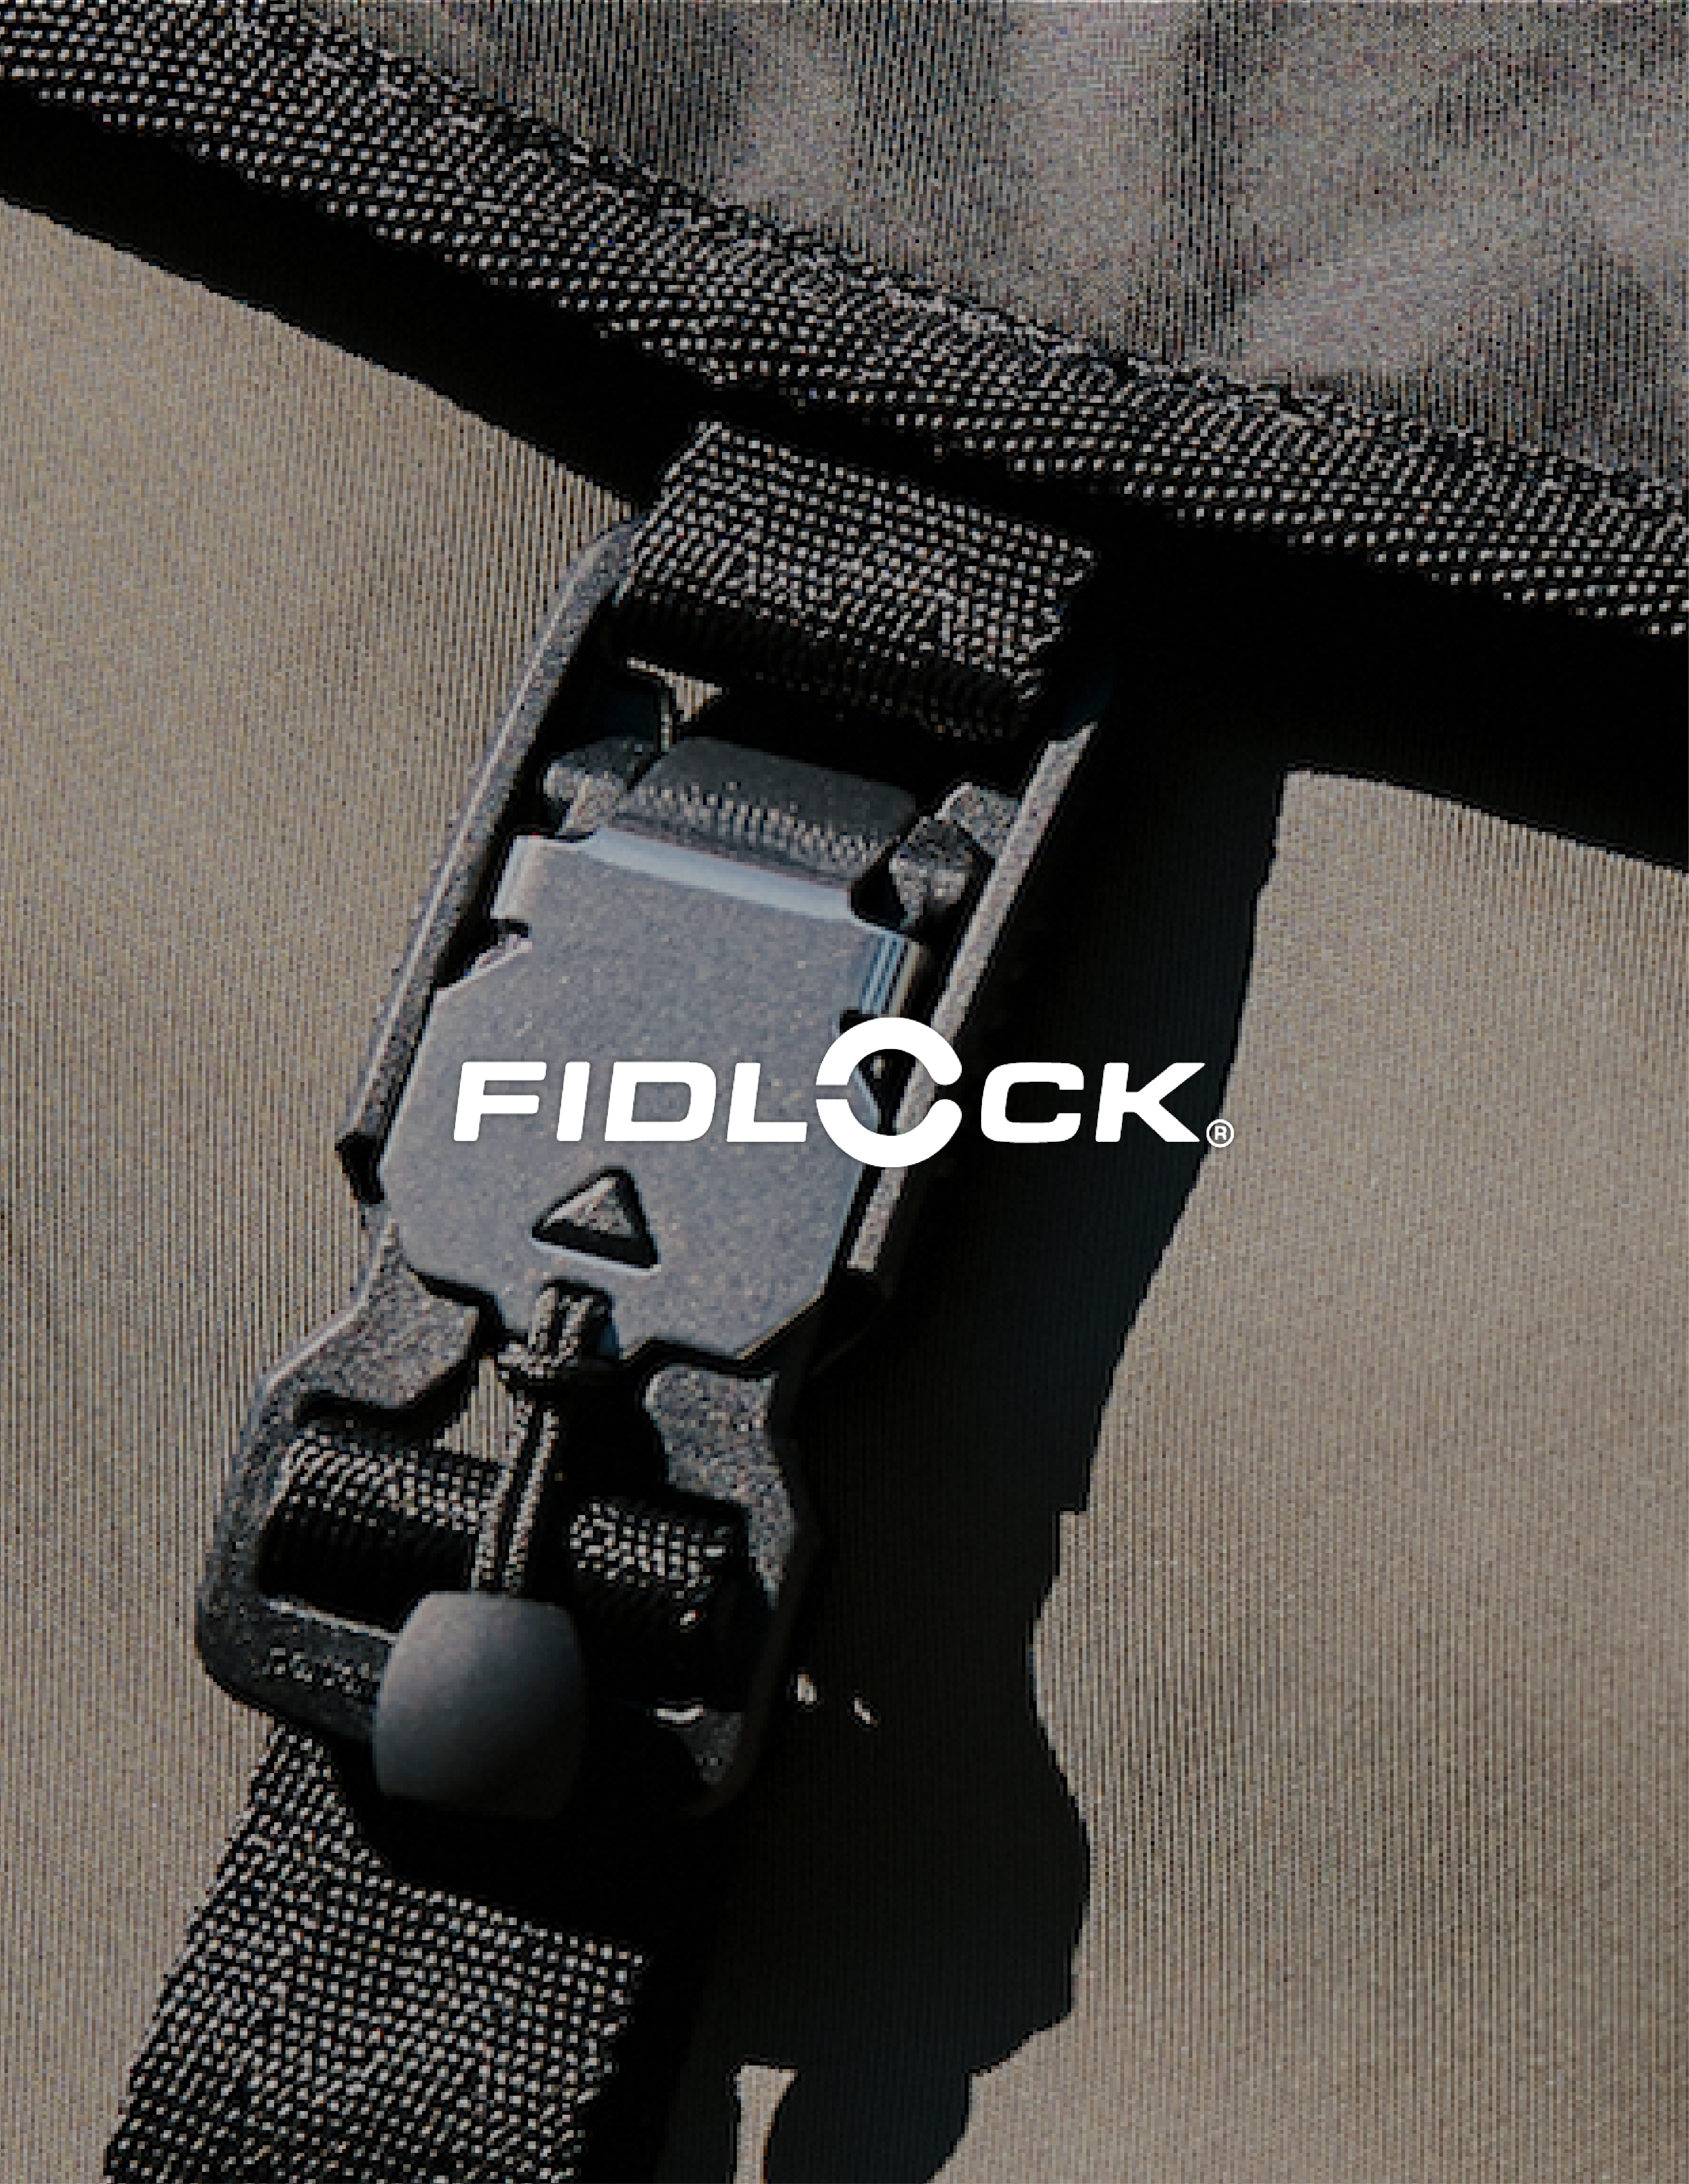 Buy 3/4 Inch Fidlock® Snap Buckle Online